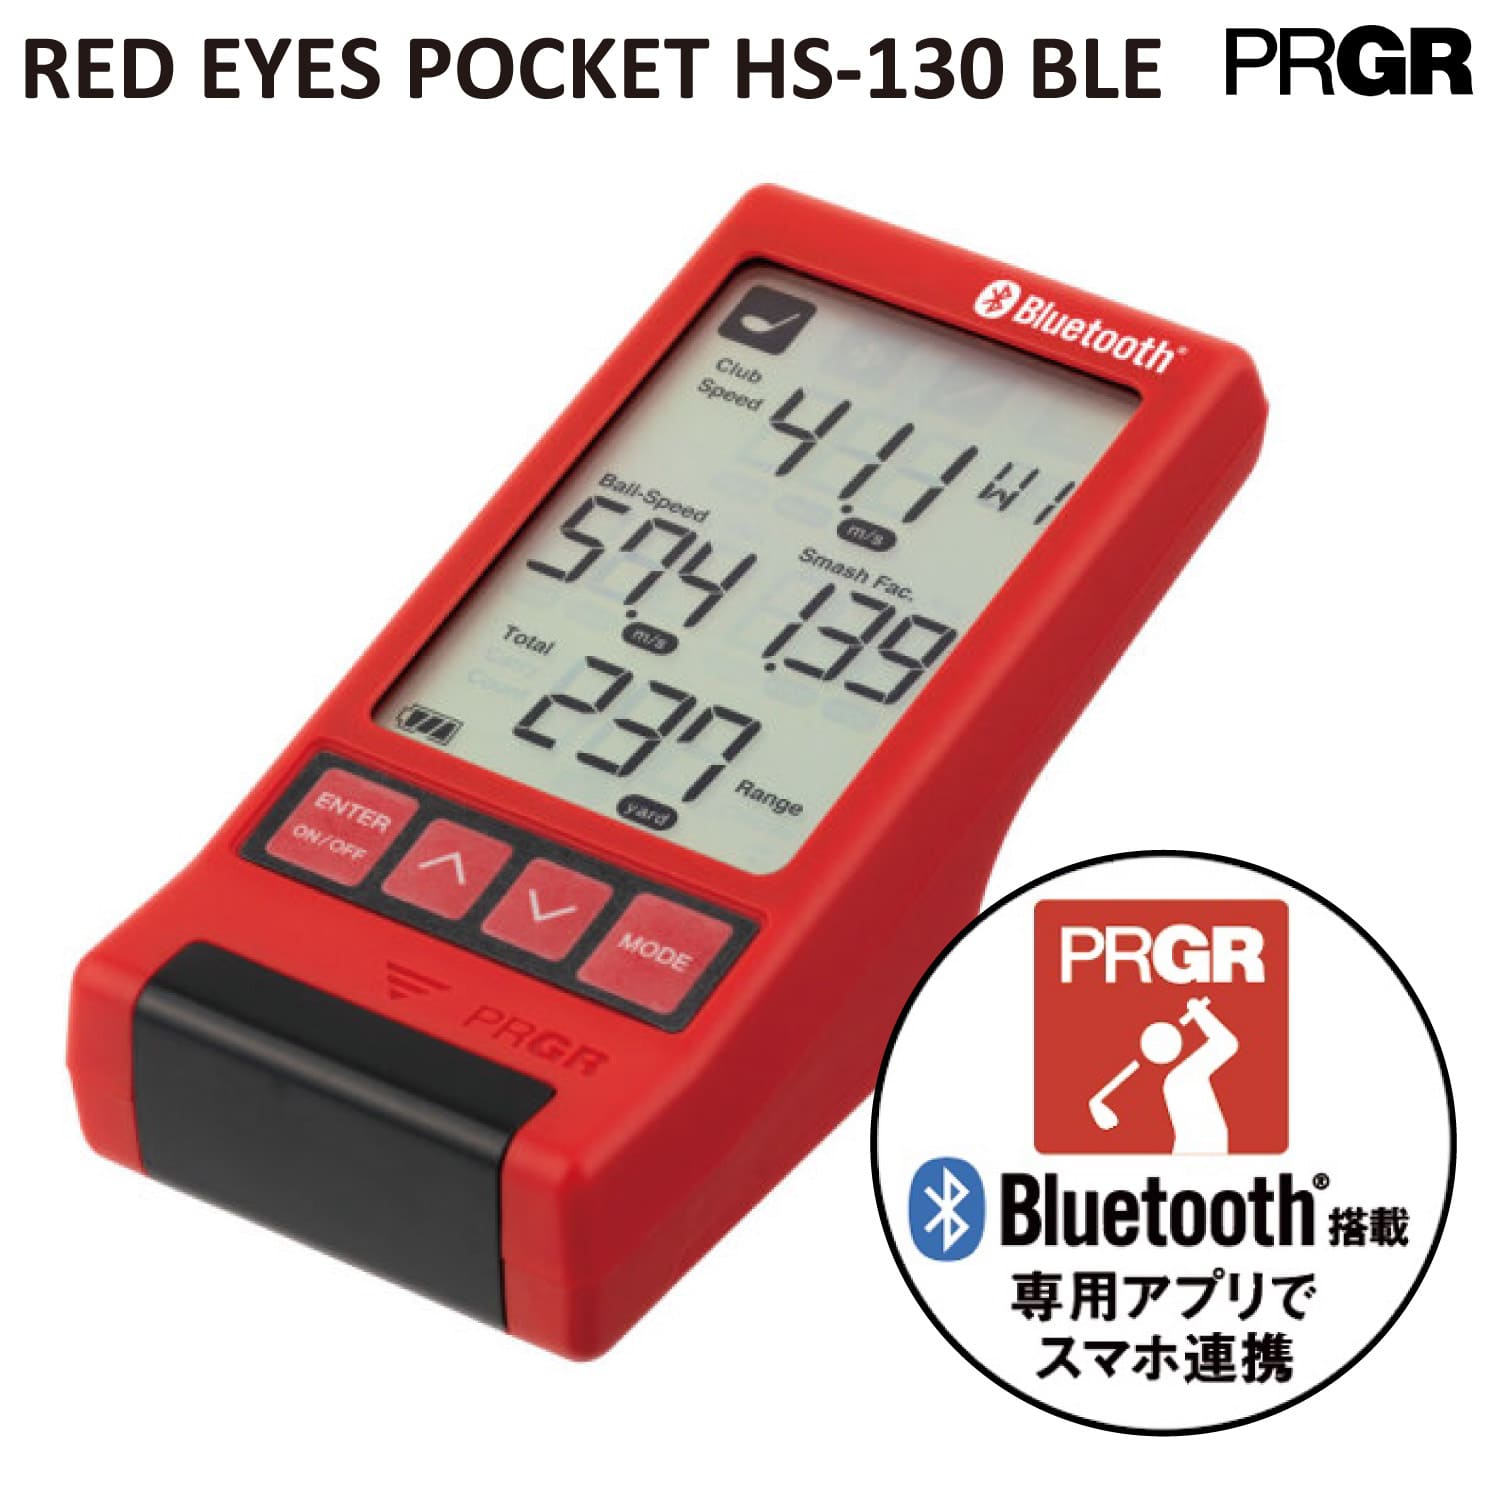 【予約販売】 測定器 PRGR RED EYES POCKET HS-130 BLE Bluetooth搭載 レッドアイズポケット プロギア ゴルフ 練習器具 デジタル トレーニング スピード測定